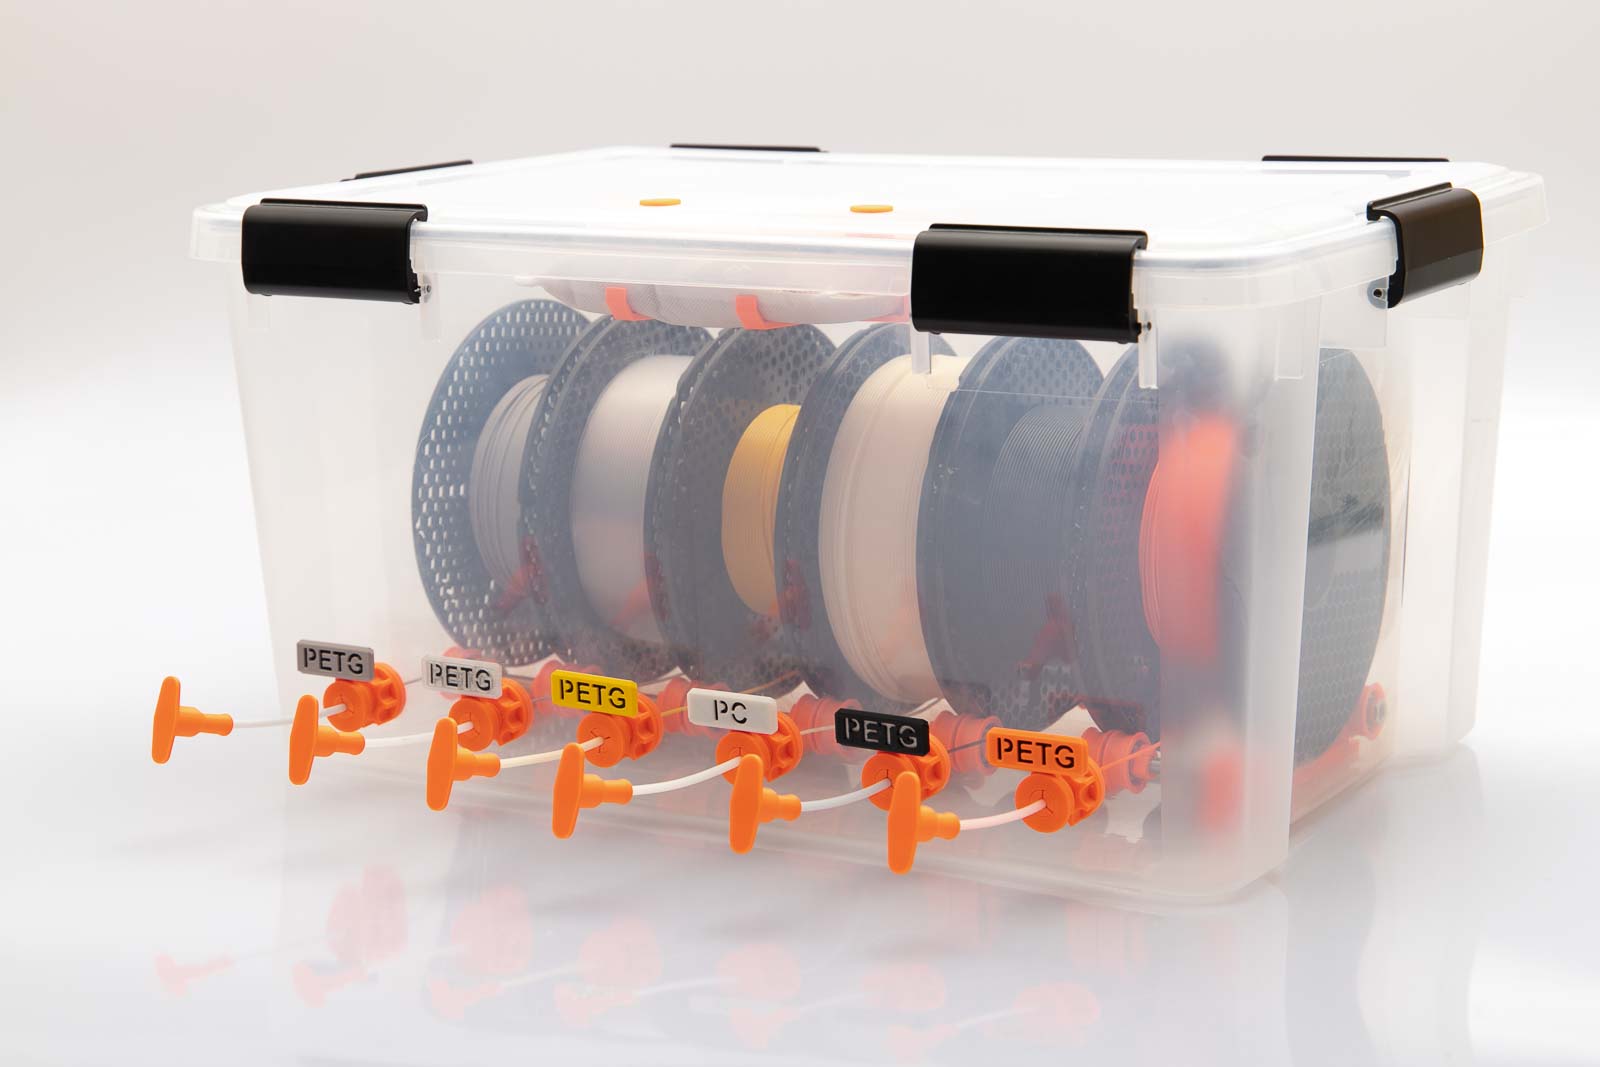 DIY selbstgebaute Filament Aufbewahrungsbox mit sechs Filament Durchführungen Variante A und aufsteckbaren Schildern zur Kennzeichnung der gelagerten Filament Rollen.